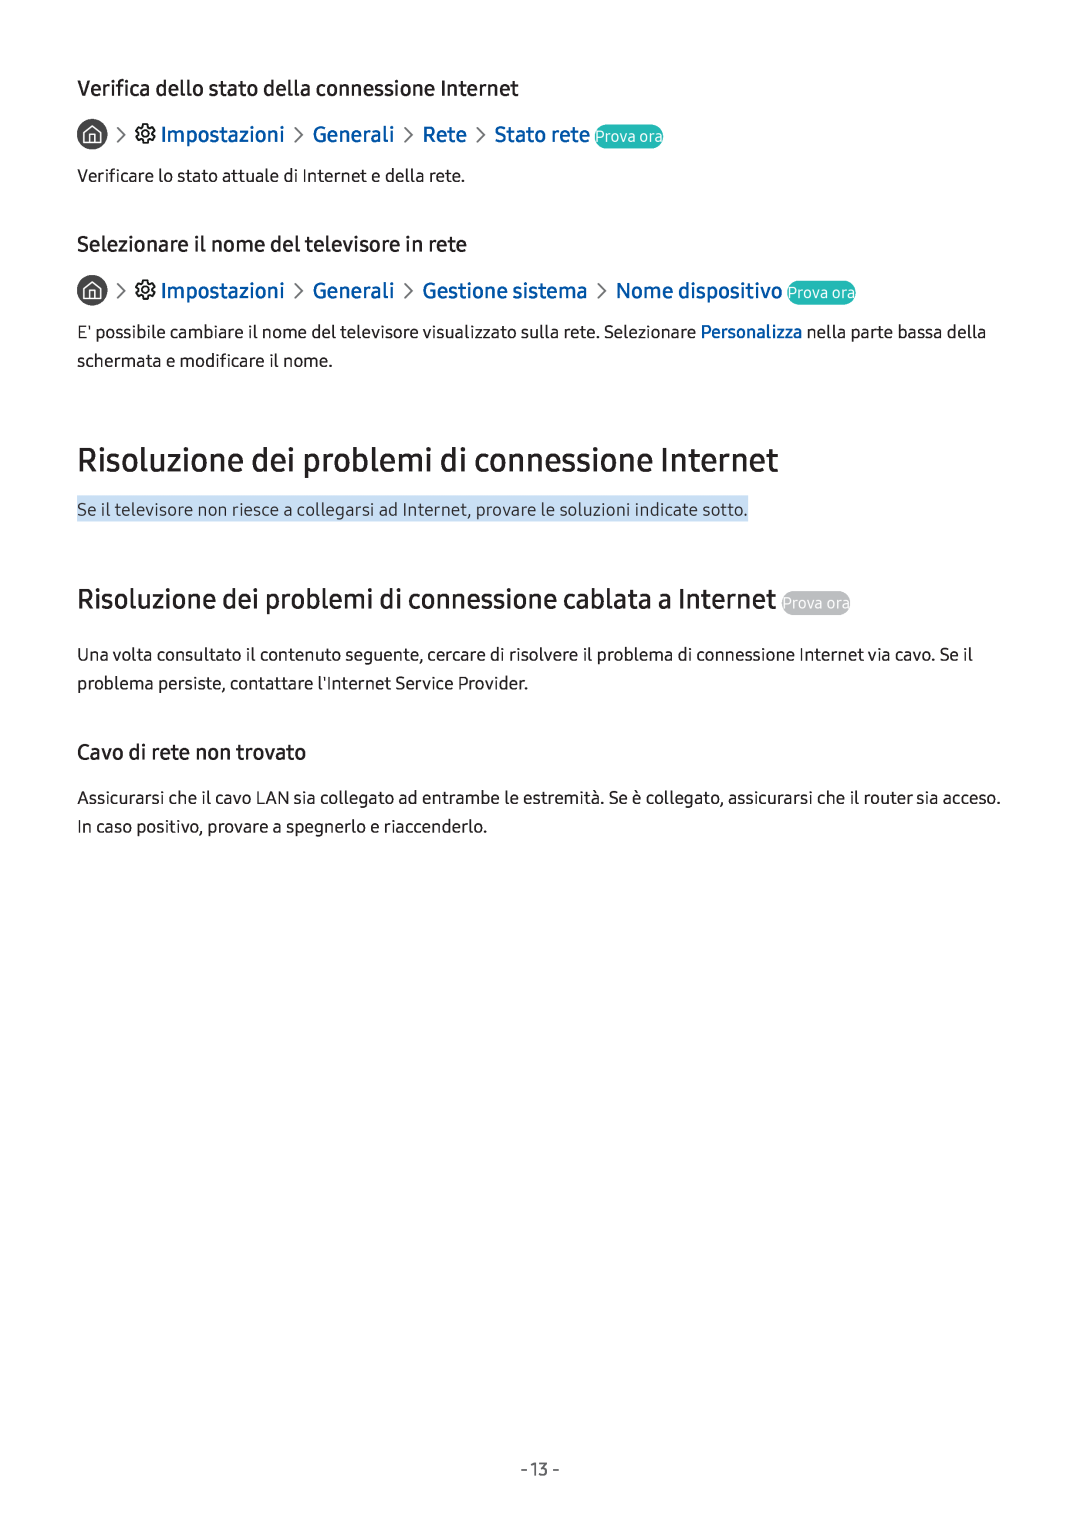 Samsung UE43M5620AWXXN Risoluzione dei problemi di connessione Internet, Verifica dello stato della connessione Internet 